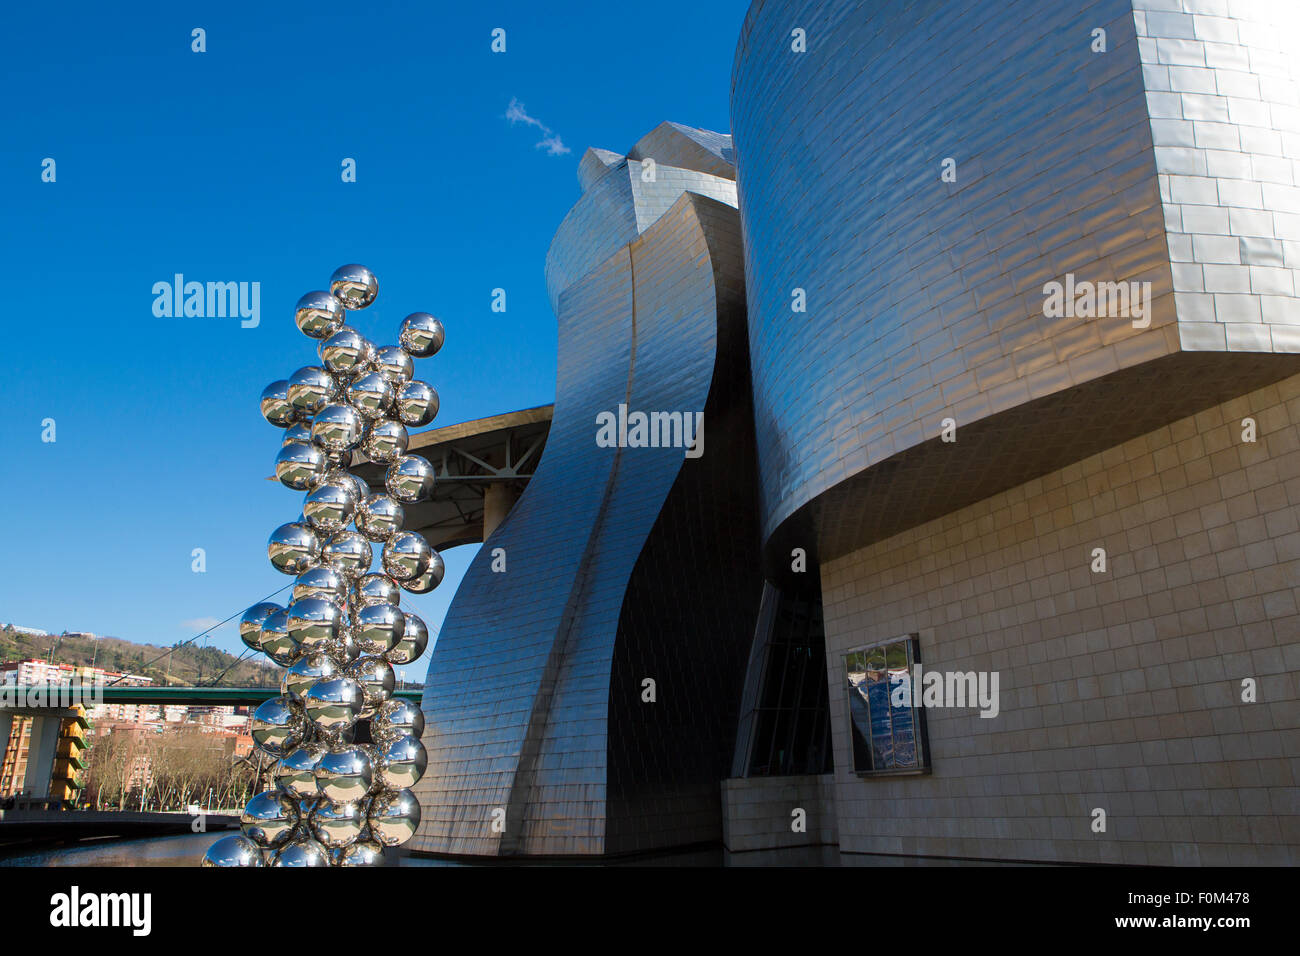 80 sculptures en acier inoxydable boules, artiste indien Anish Kapoor, et situé dans le Musée Guggenheim Bilbao, Espagne. Banque D'Images